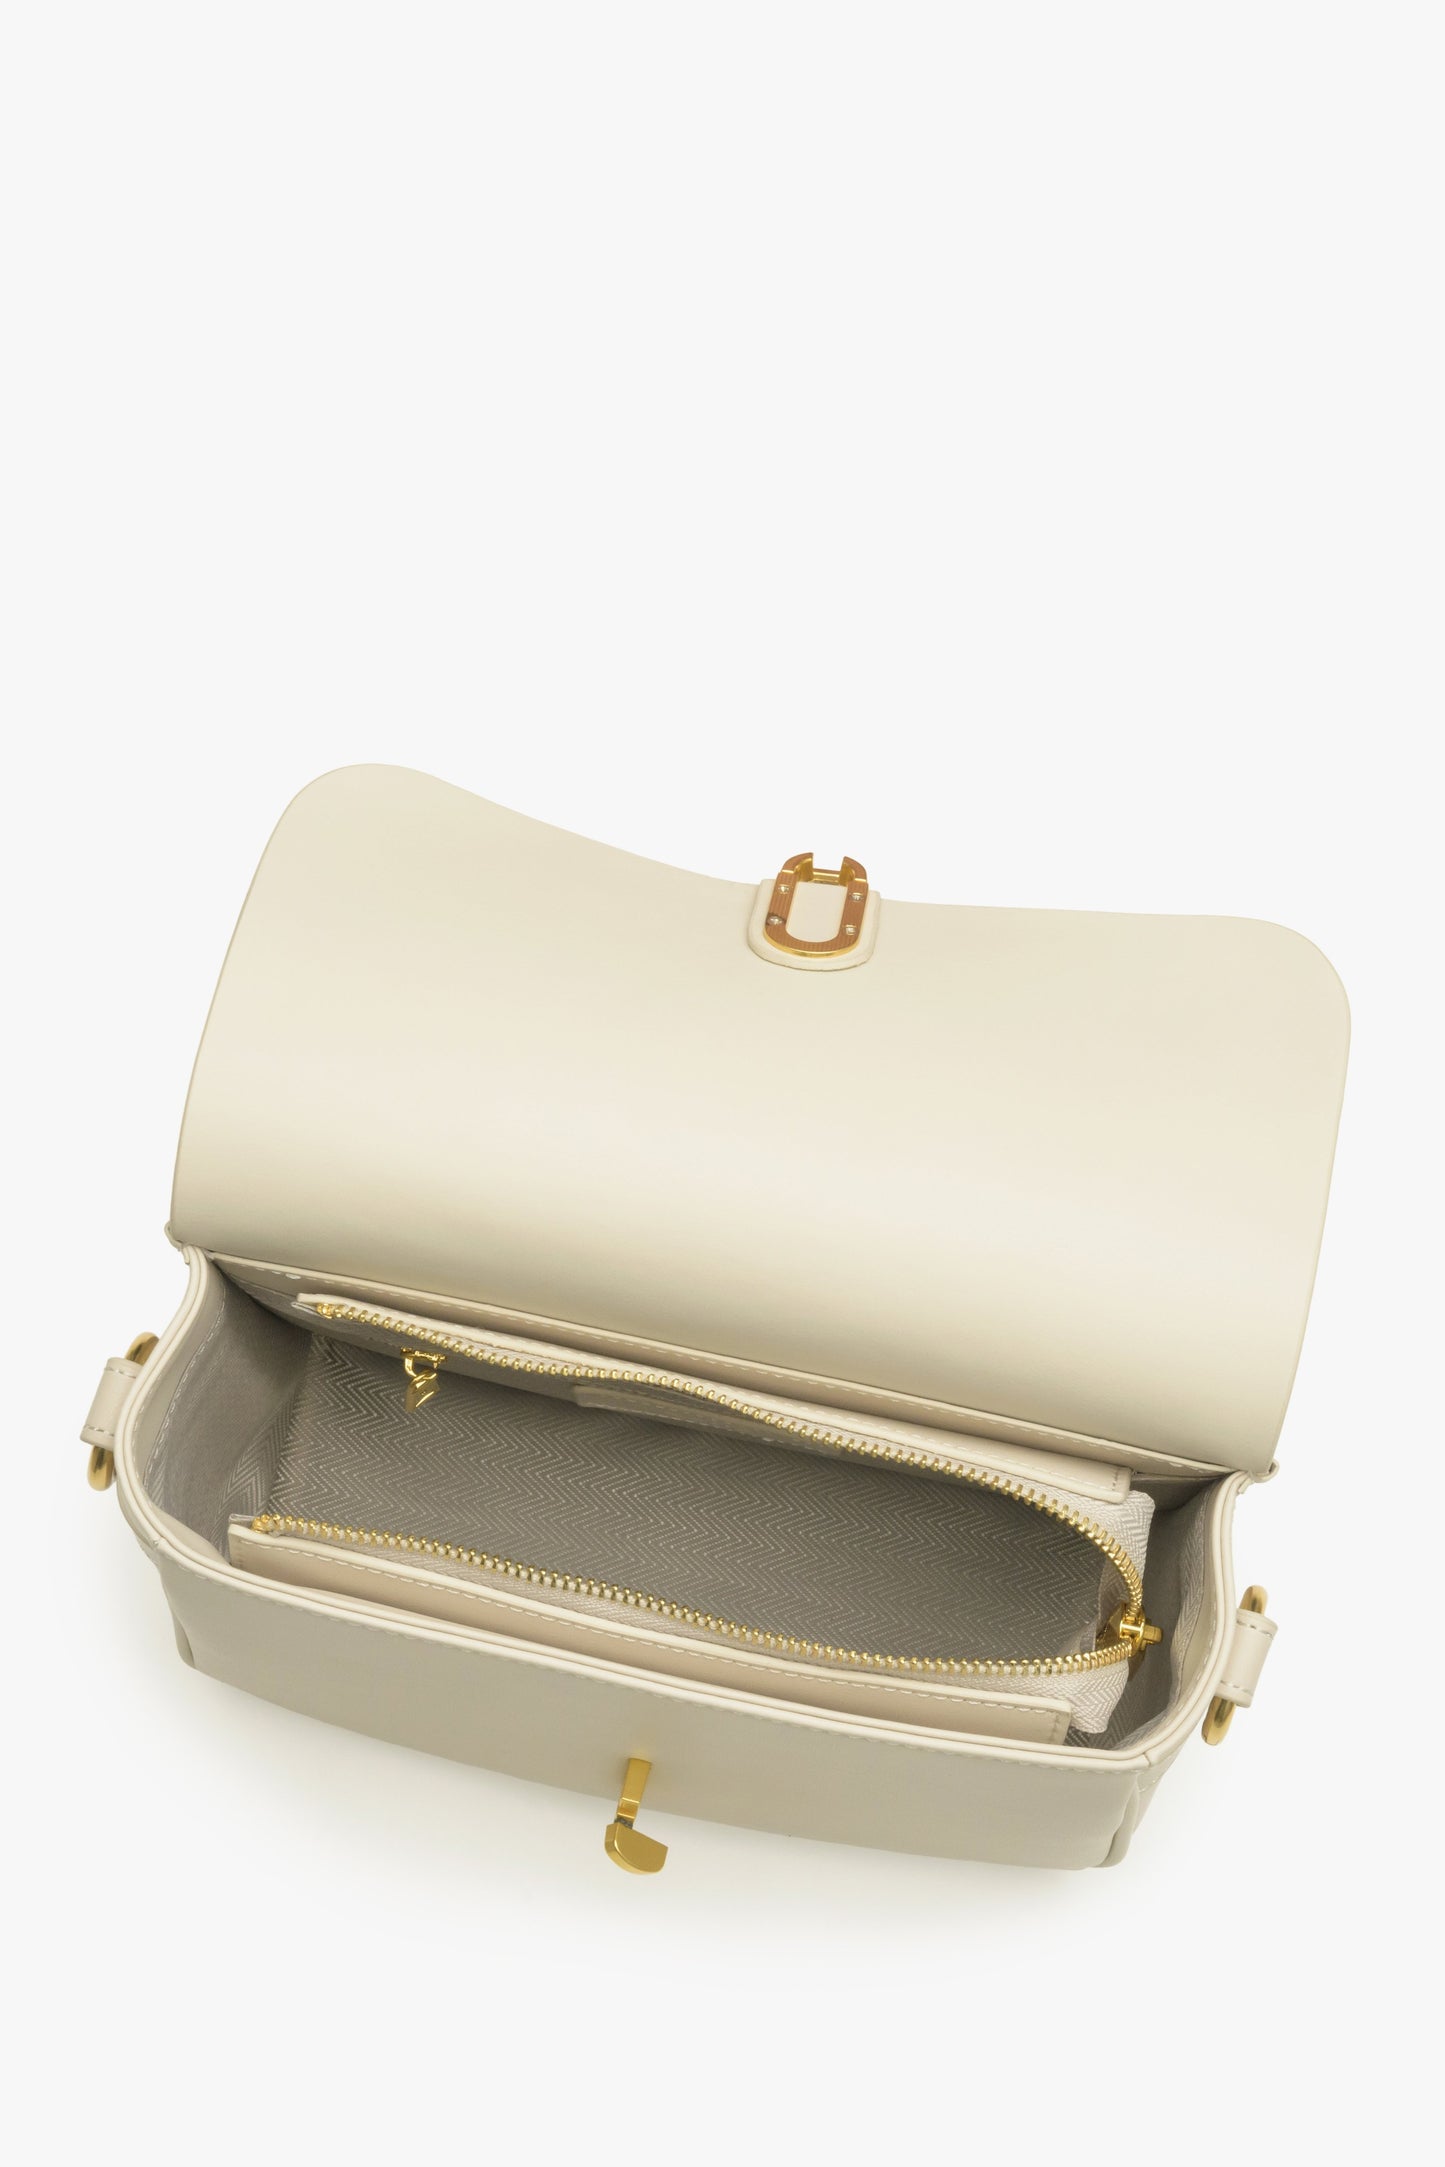 Damska torebka w kolorze mleczno-beżowym ze skóry naturalnej marki Estro - zbliżenie na wnętrze modelu.